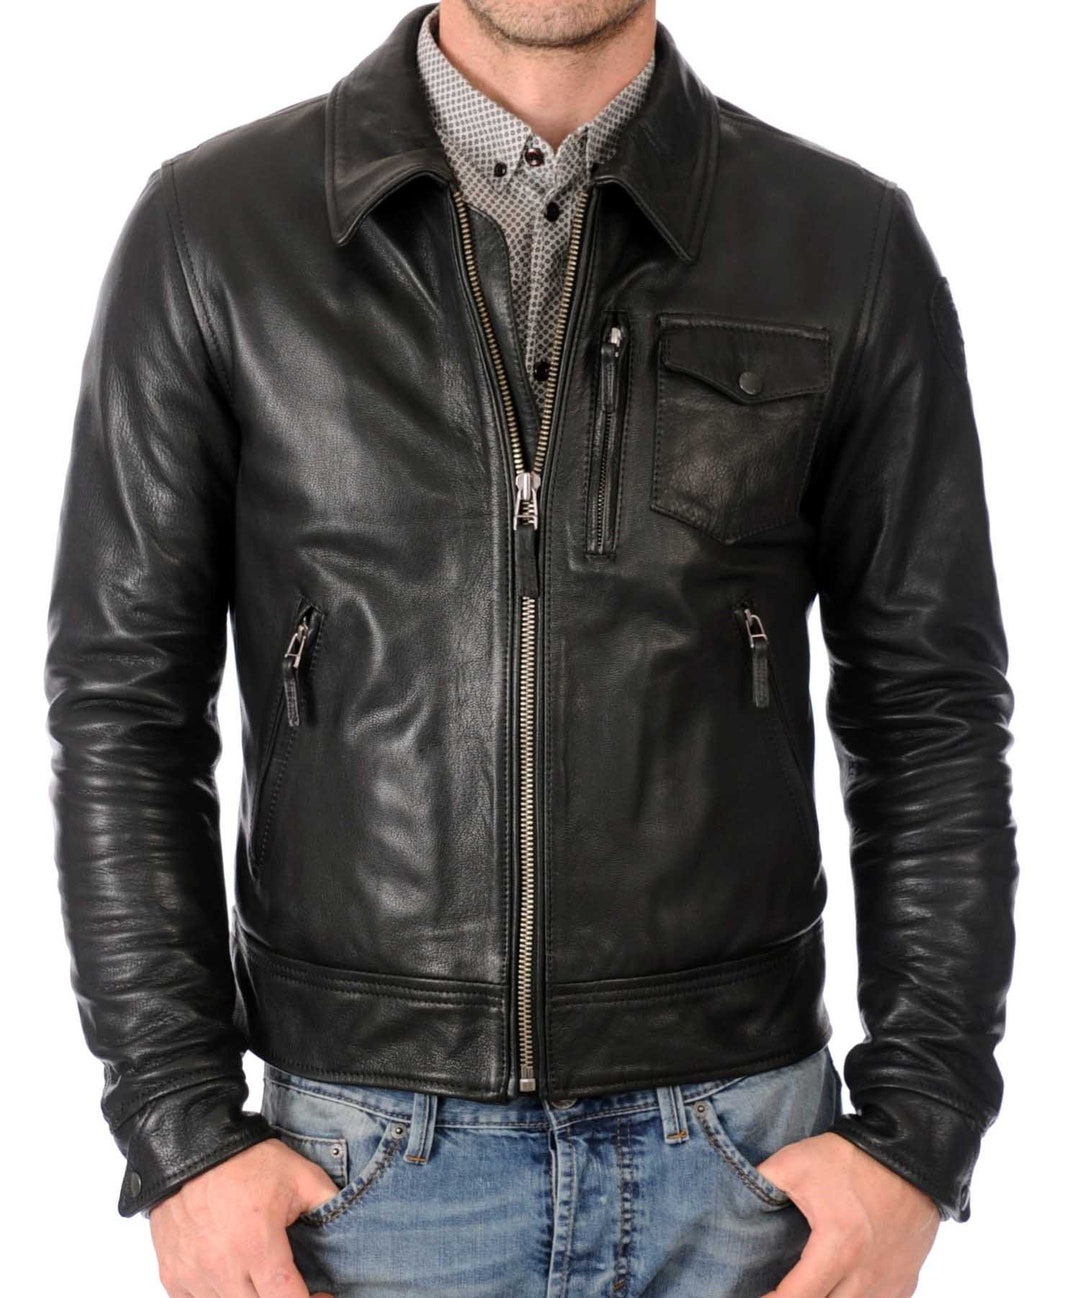 High Glamor Men's Leather Jacket Stylish Handmade - Etsy